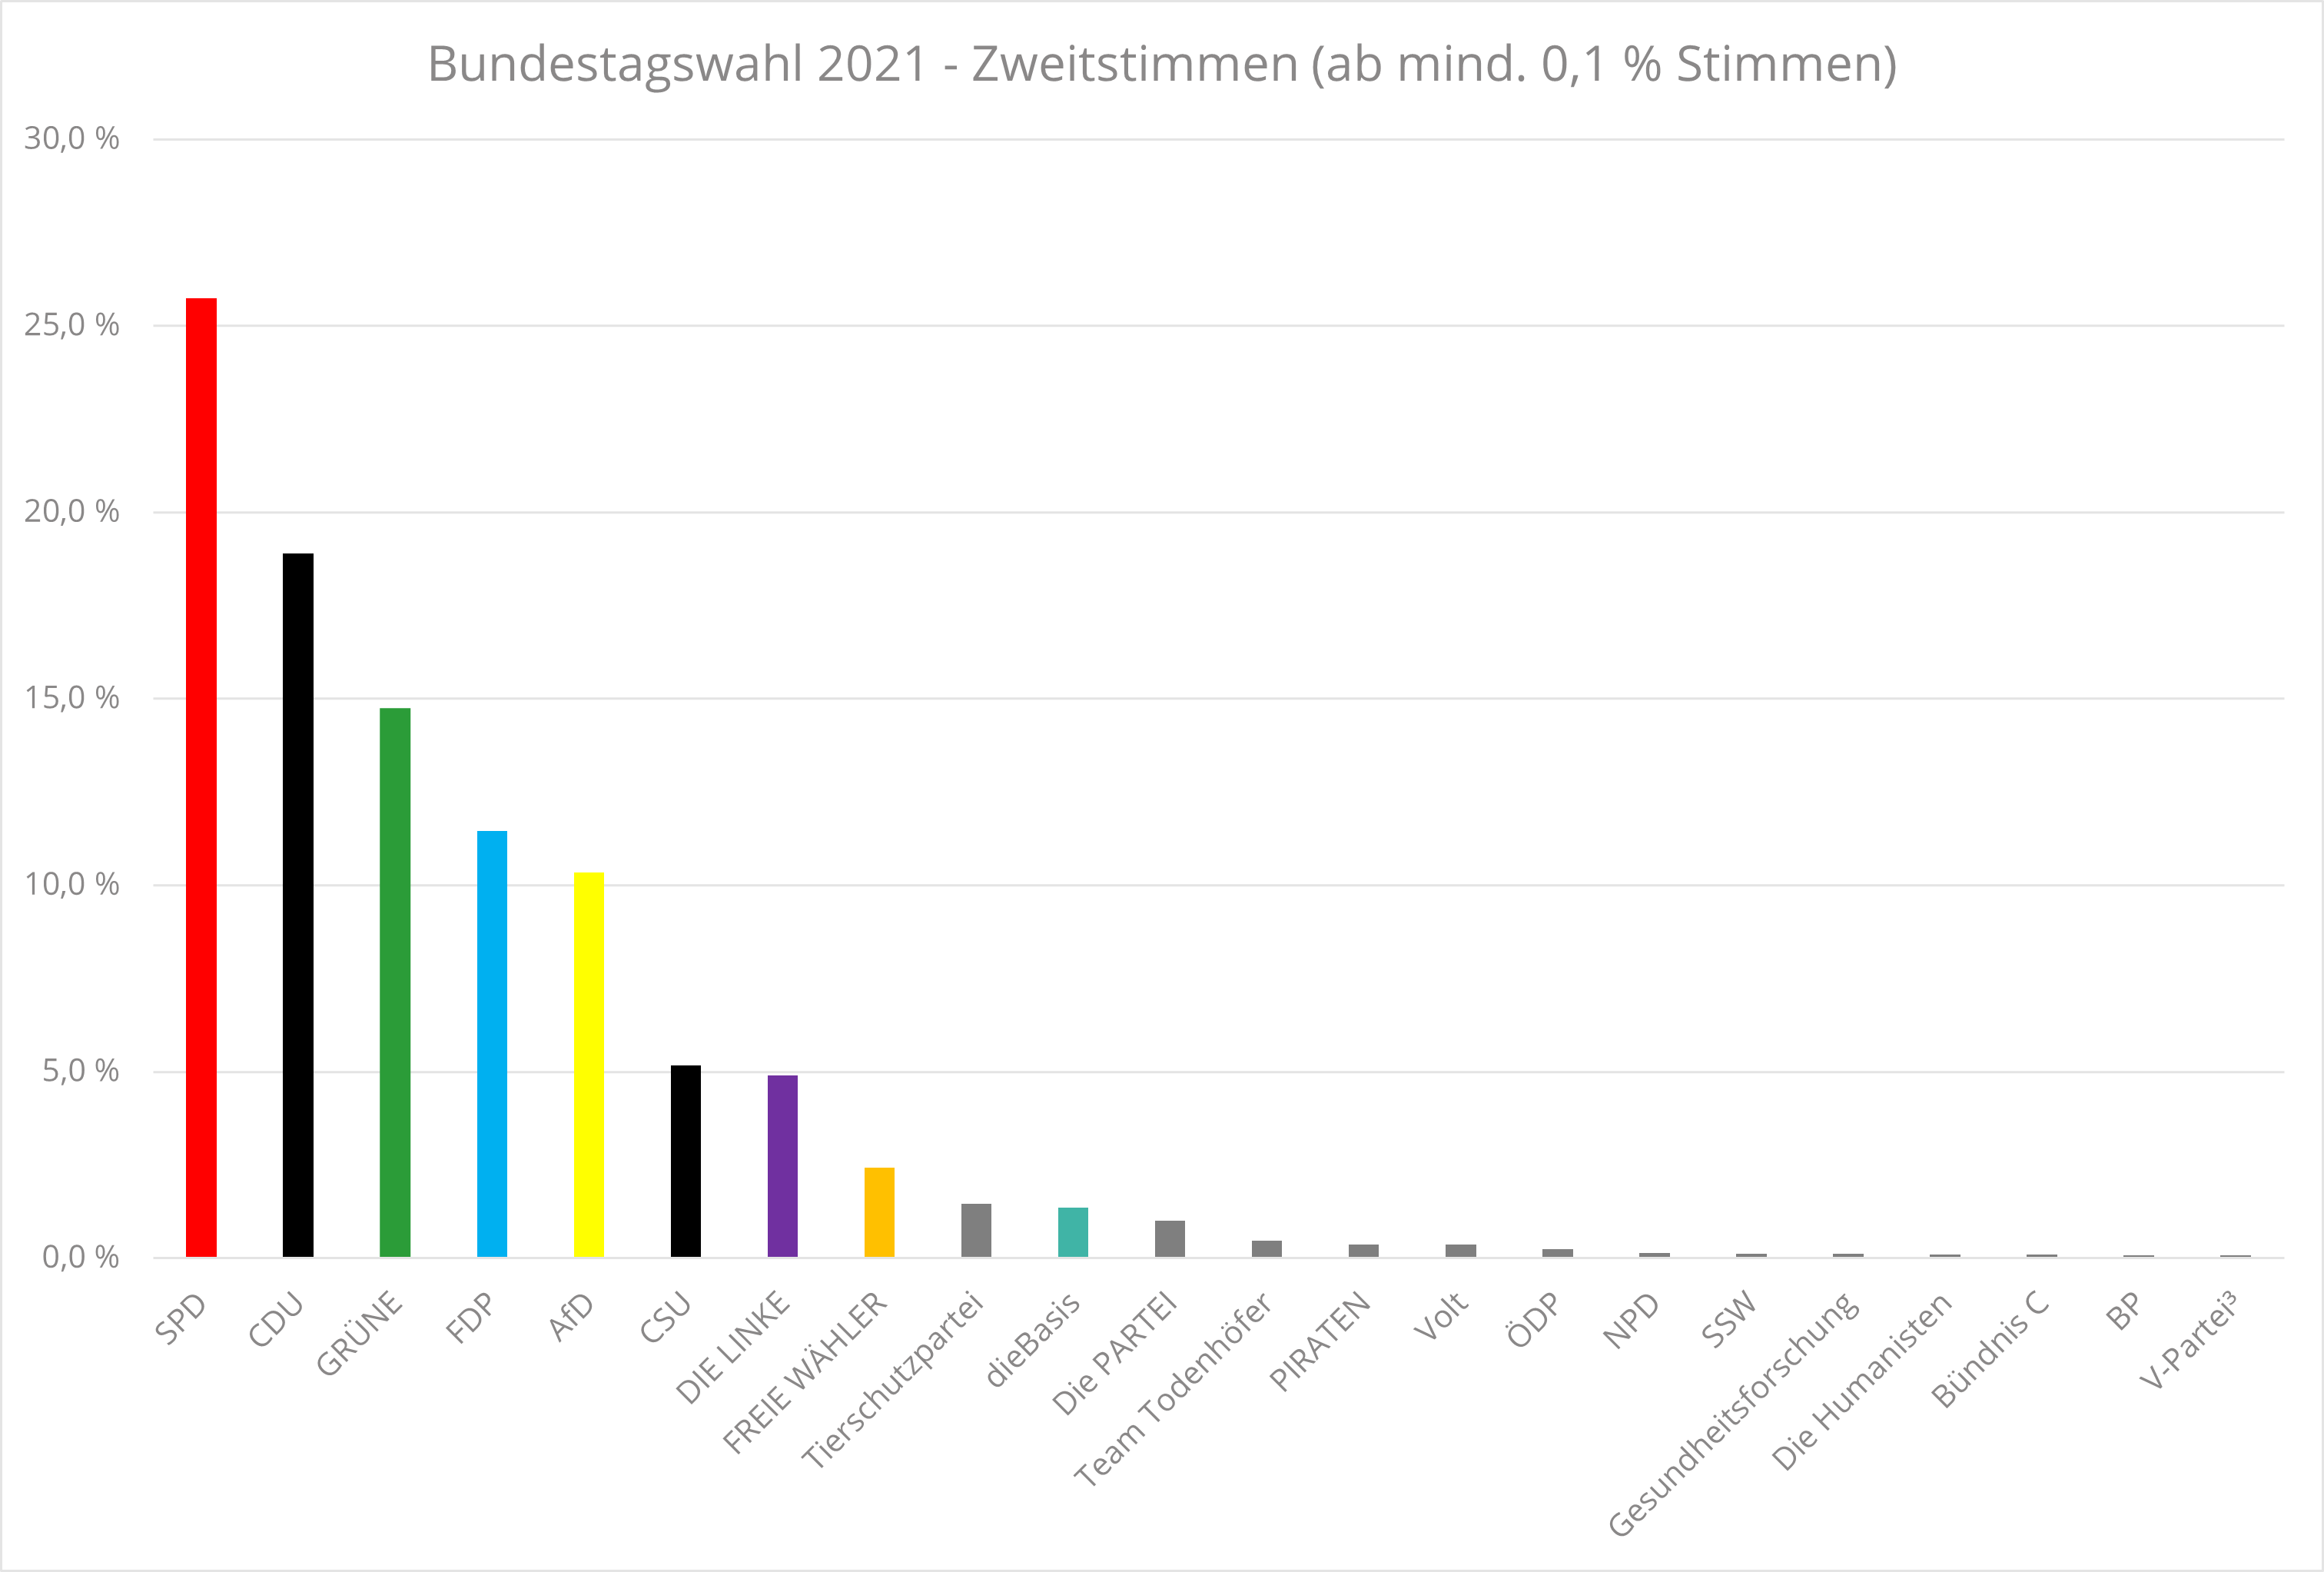 Bundestagswahl 2021 - Ergebnisse Zweitstimmen (ab mindestens 0.1 Prozent)